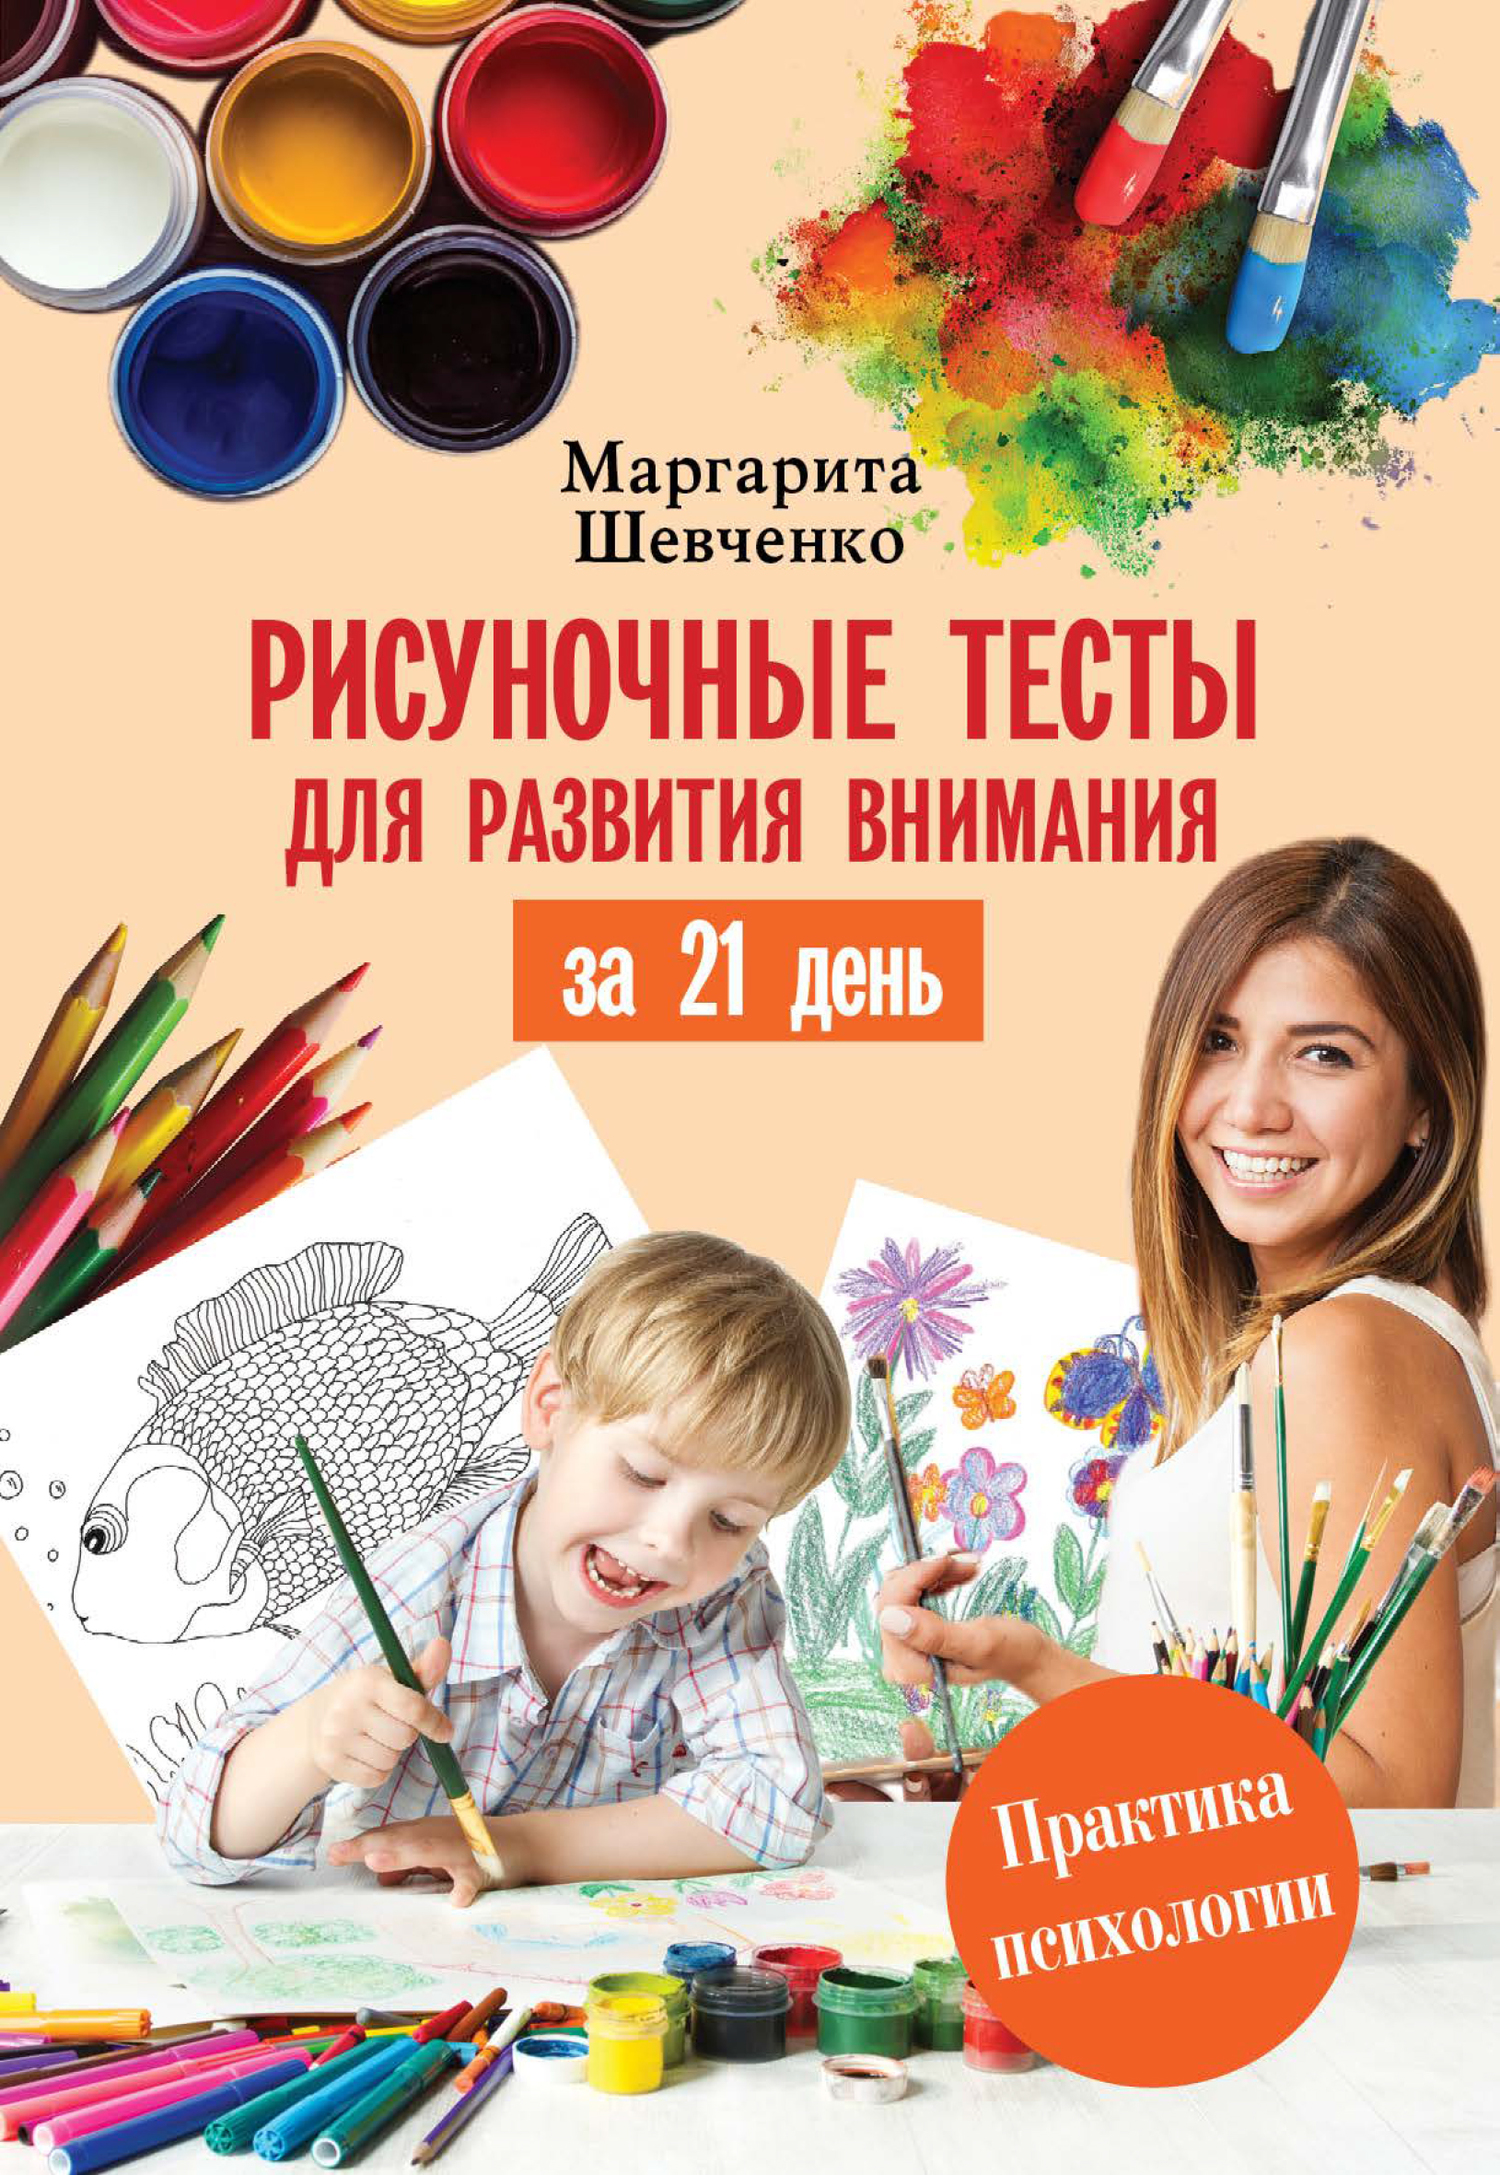 Скачать Рисуночные тесты для развития внимания за 21 день - Маргарита Шевченко